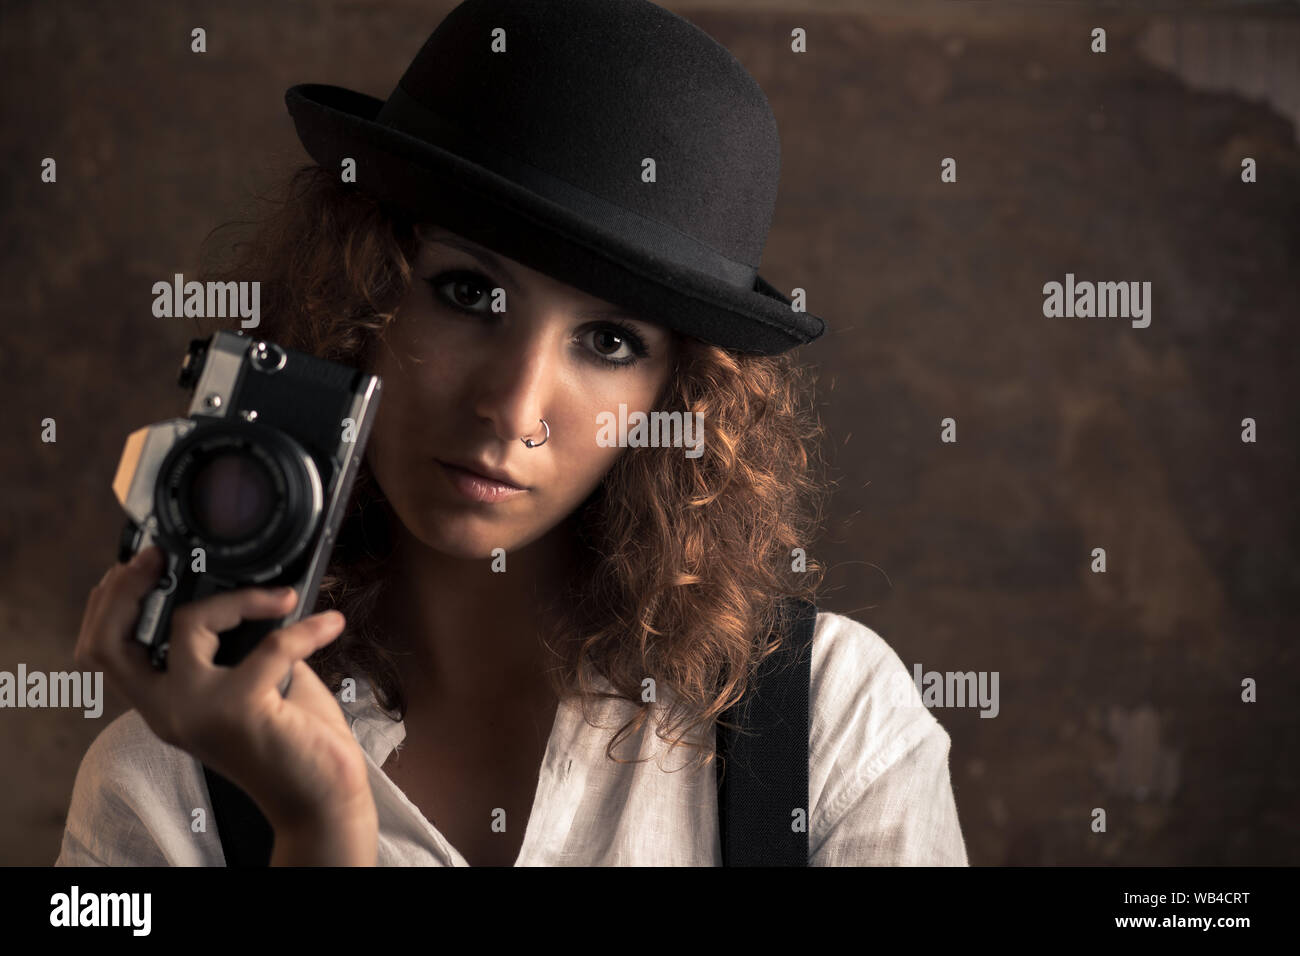 Mujer fotógrafo con Bowler y tirantes sujetando una cámara Foto de stock